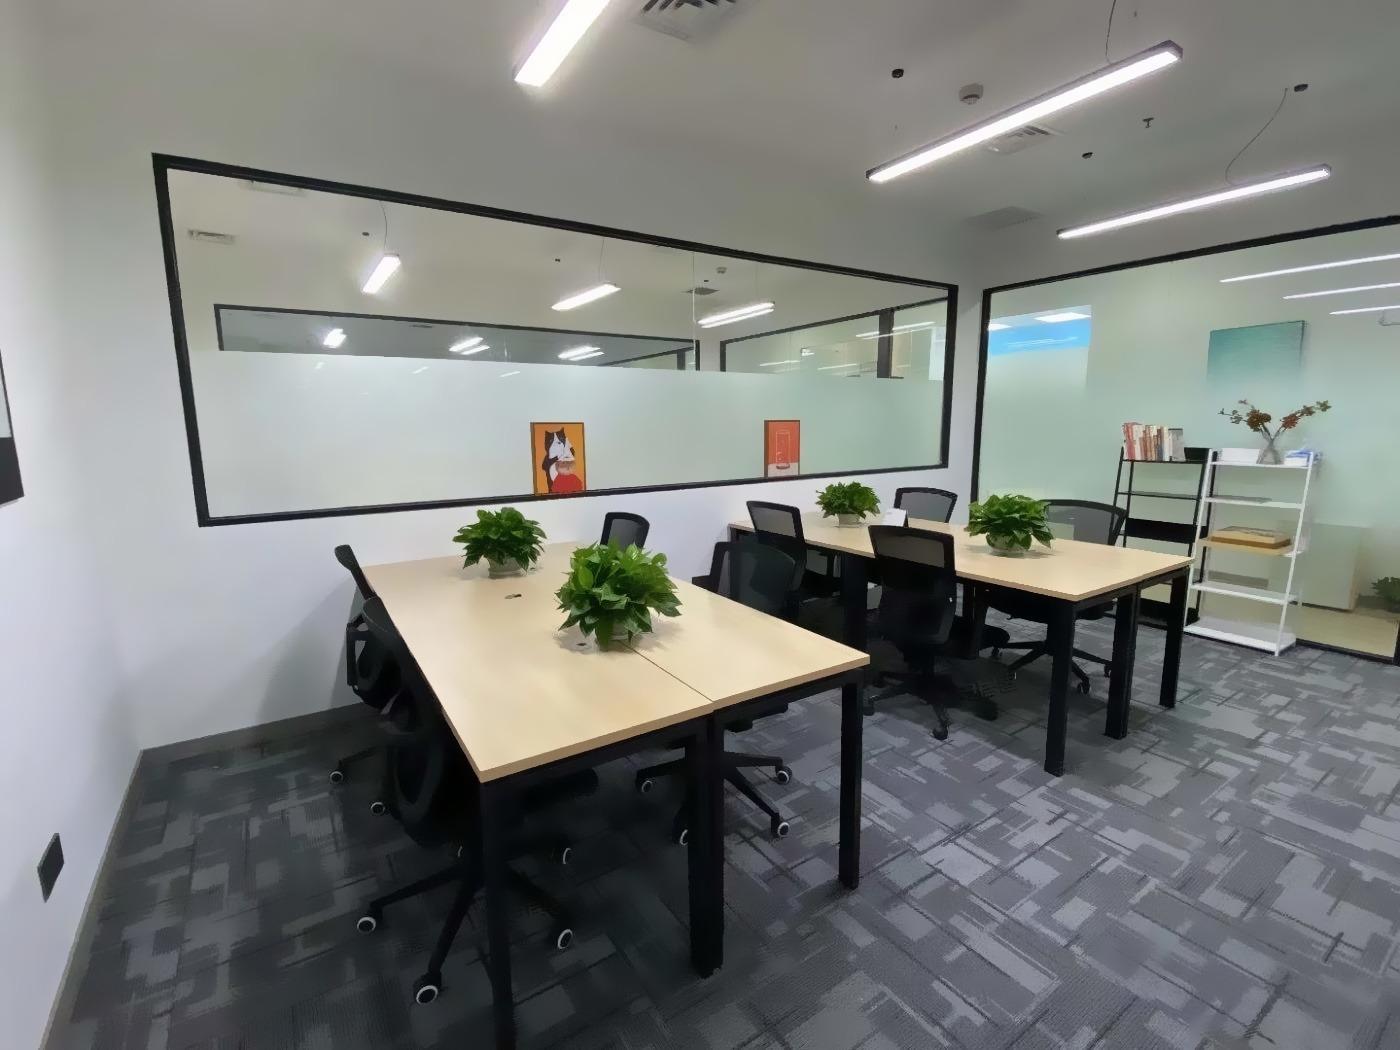 张江高科地铁口7500元全包8人间办公室全新精装带家具